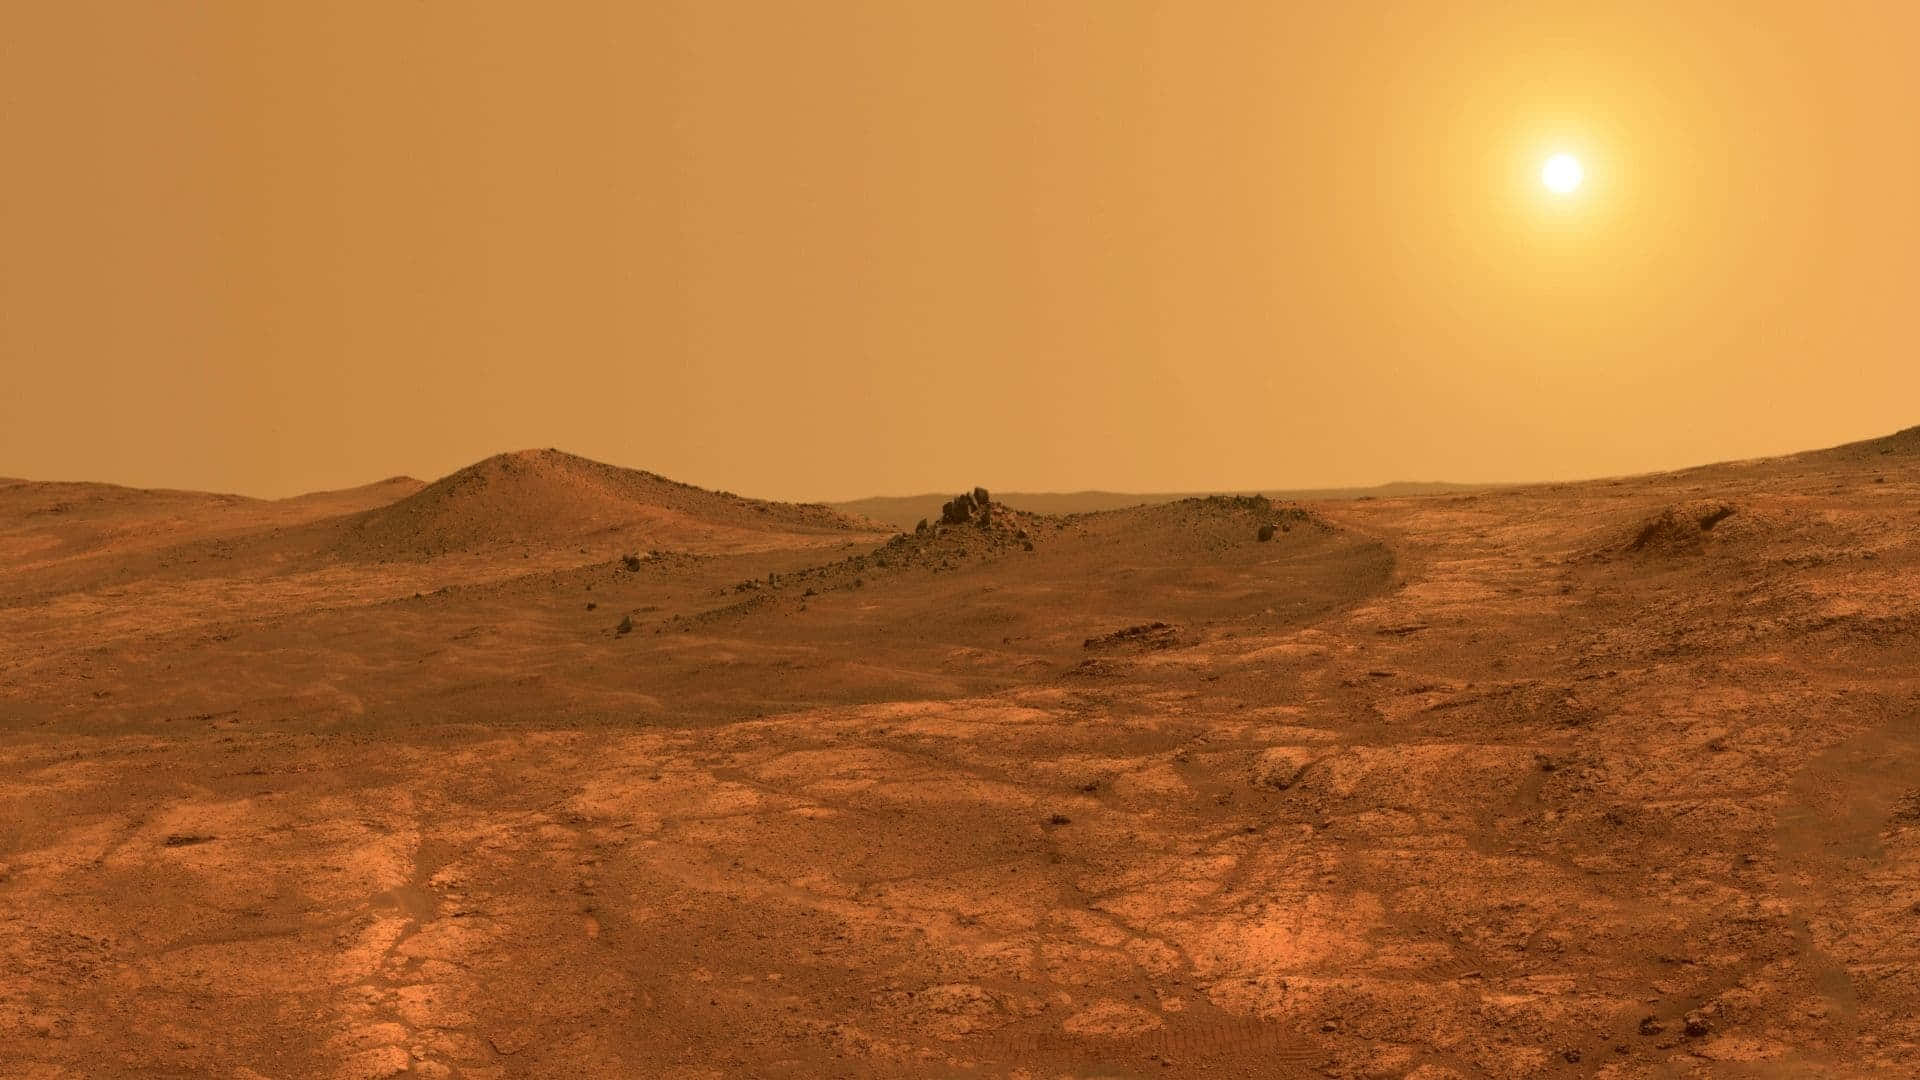 Paisagemexótica Da Superfície De Marte.